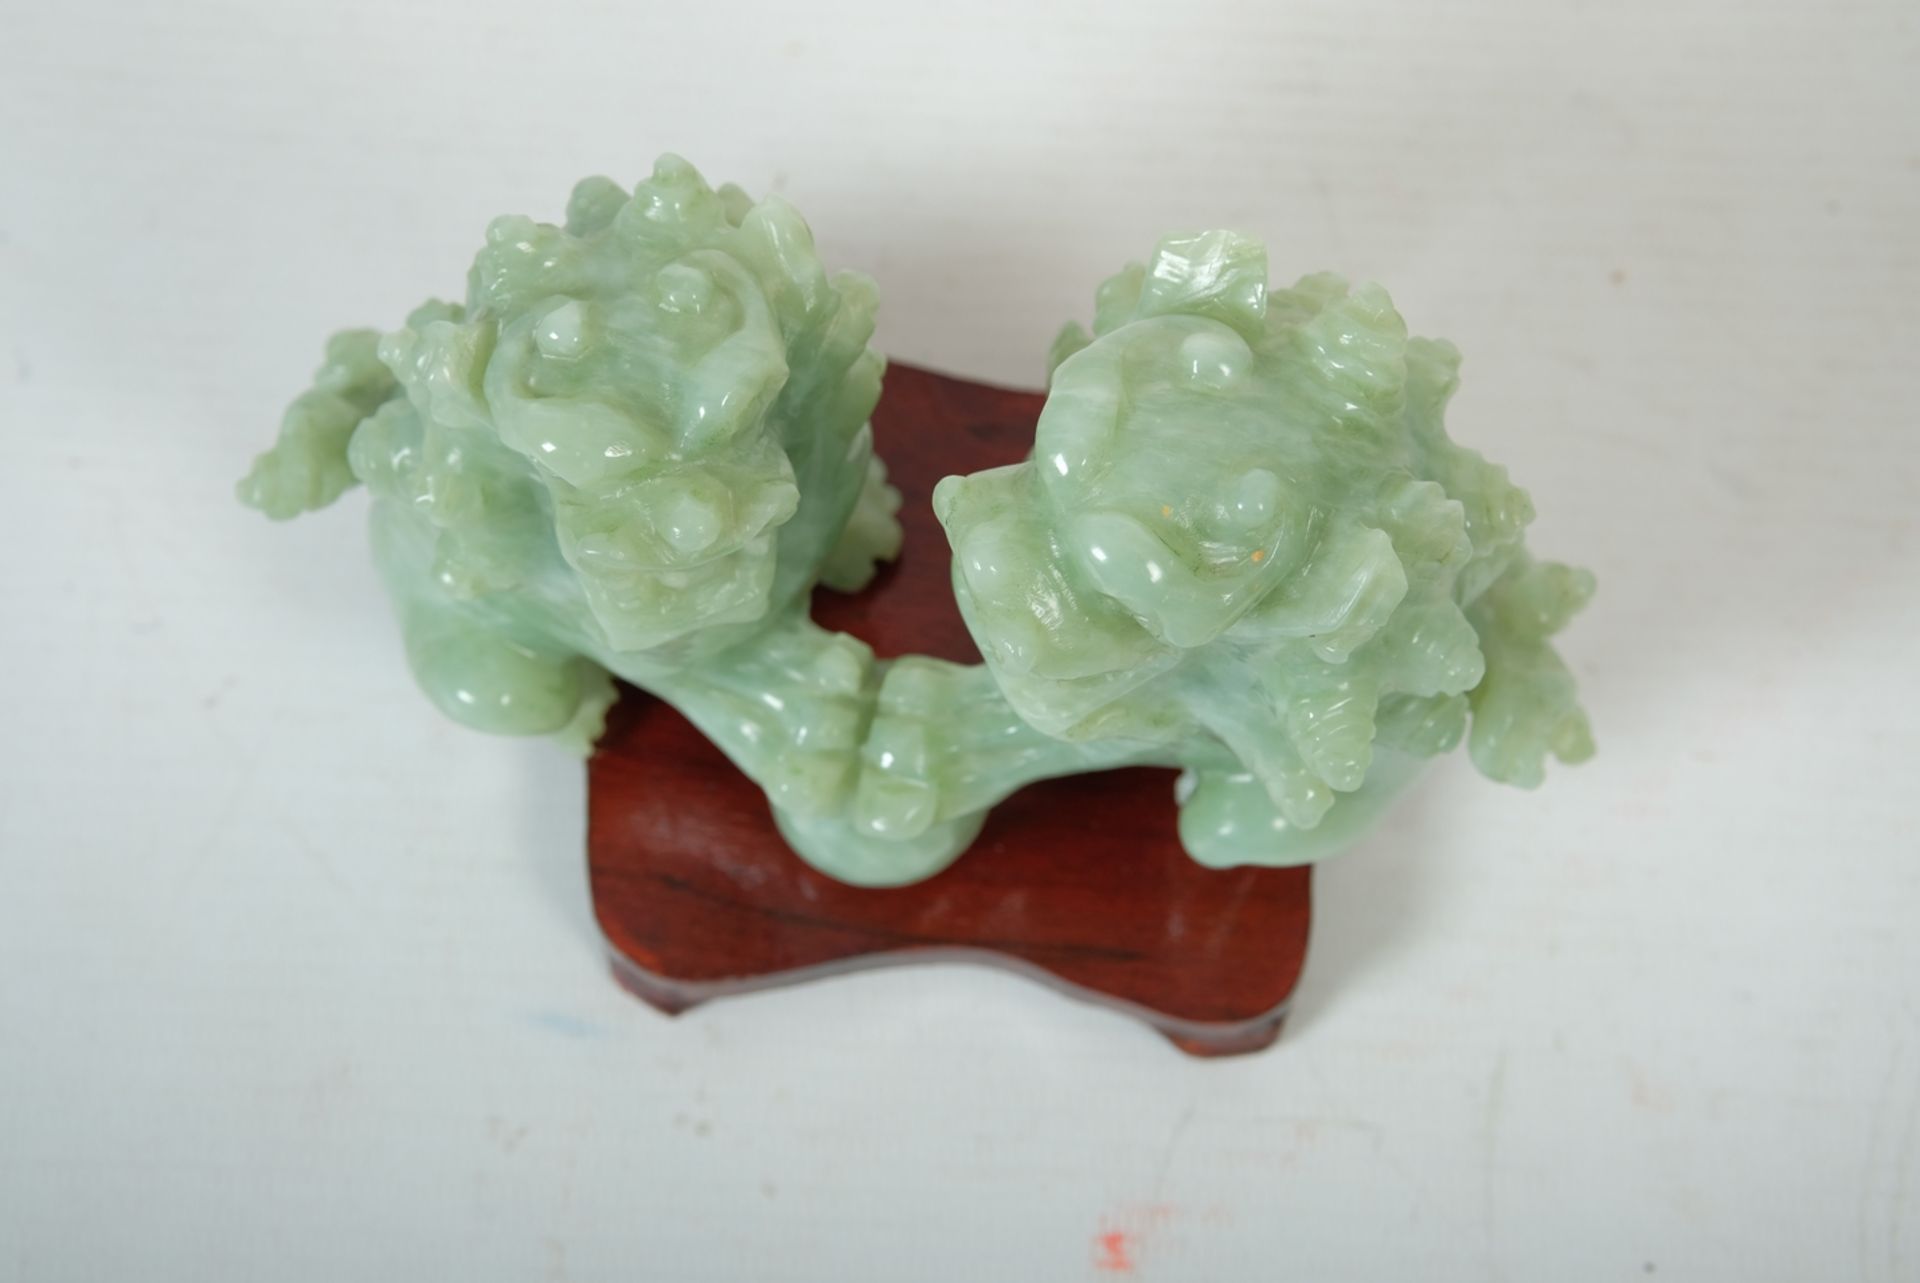 Wächterlöwen aus Jade, China, mit Sockel - Bild 2 aus 2